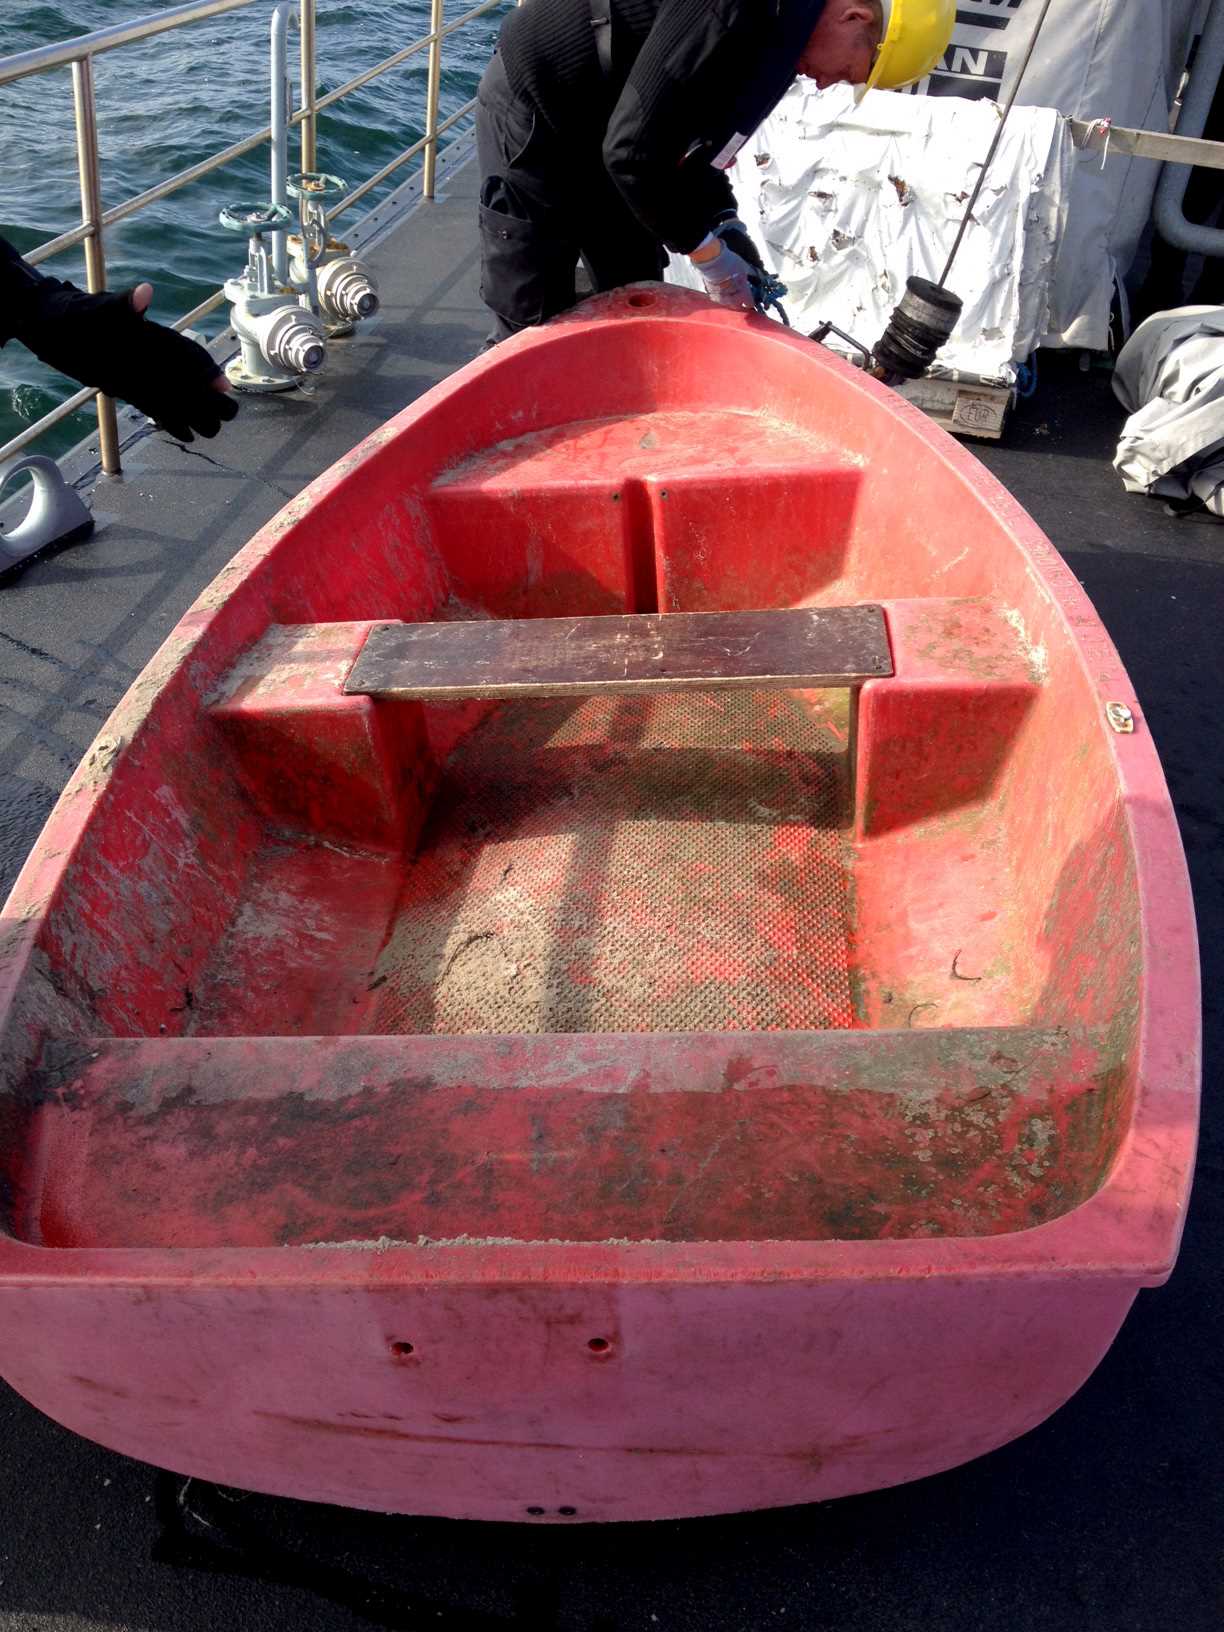 Den røde plastikjolle gøre klar til at sejle med resten af weekenden.